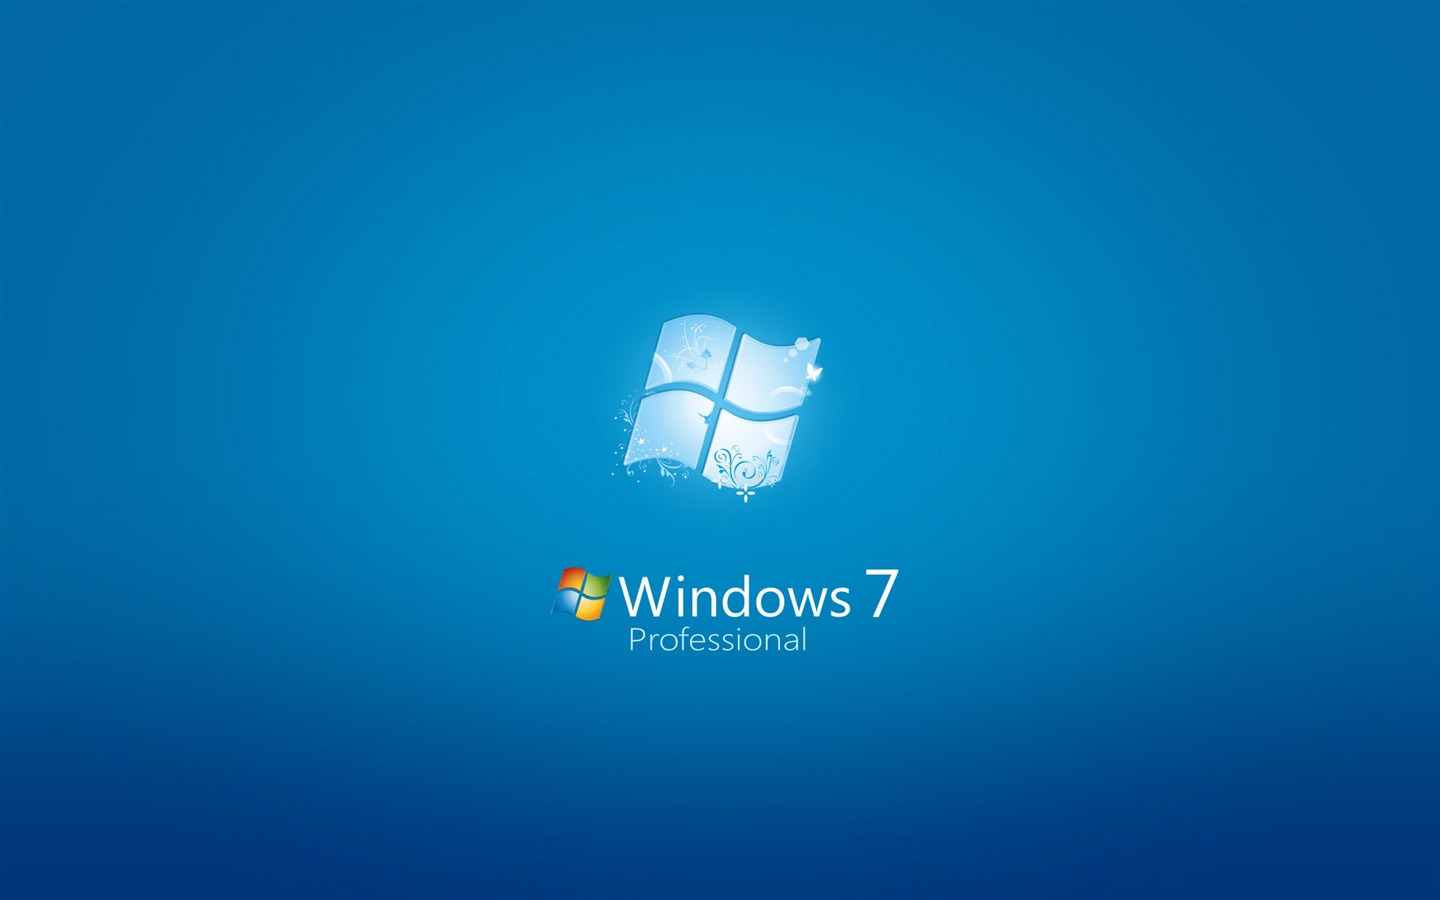 Windows7 theme wallpaper (2) #19 - 1440x900